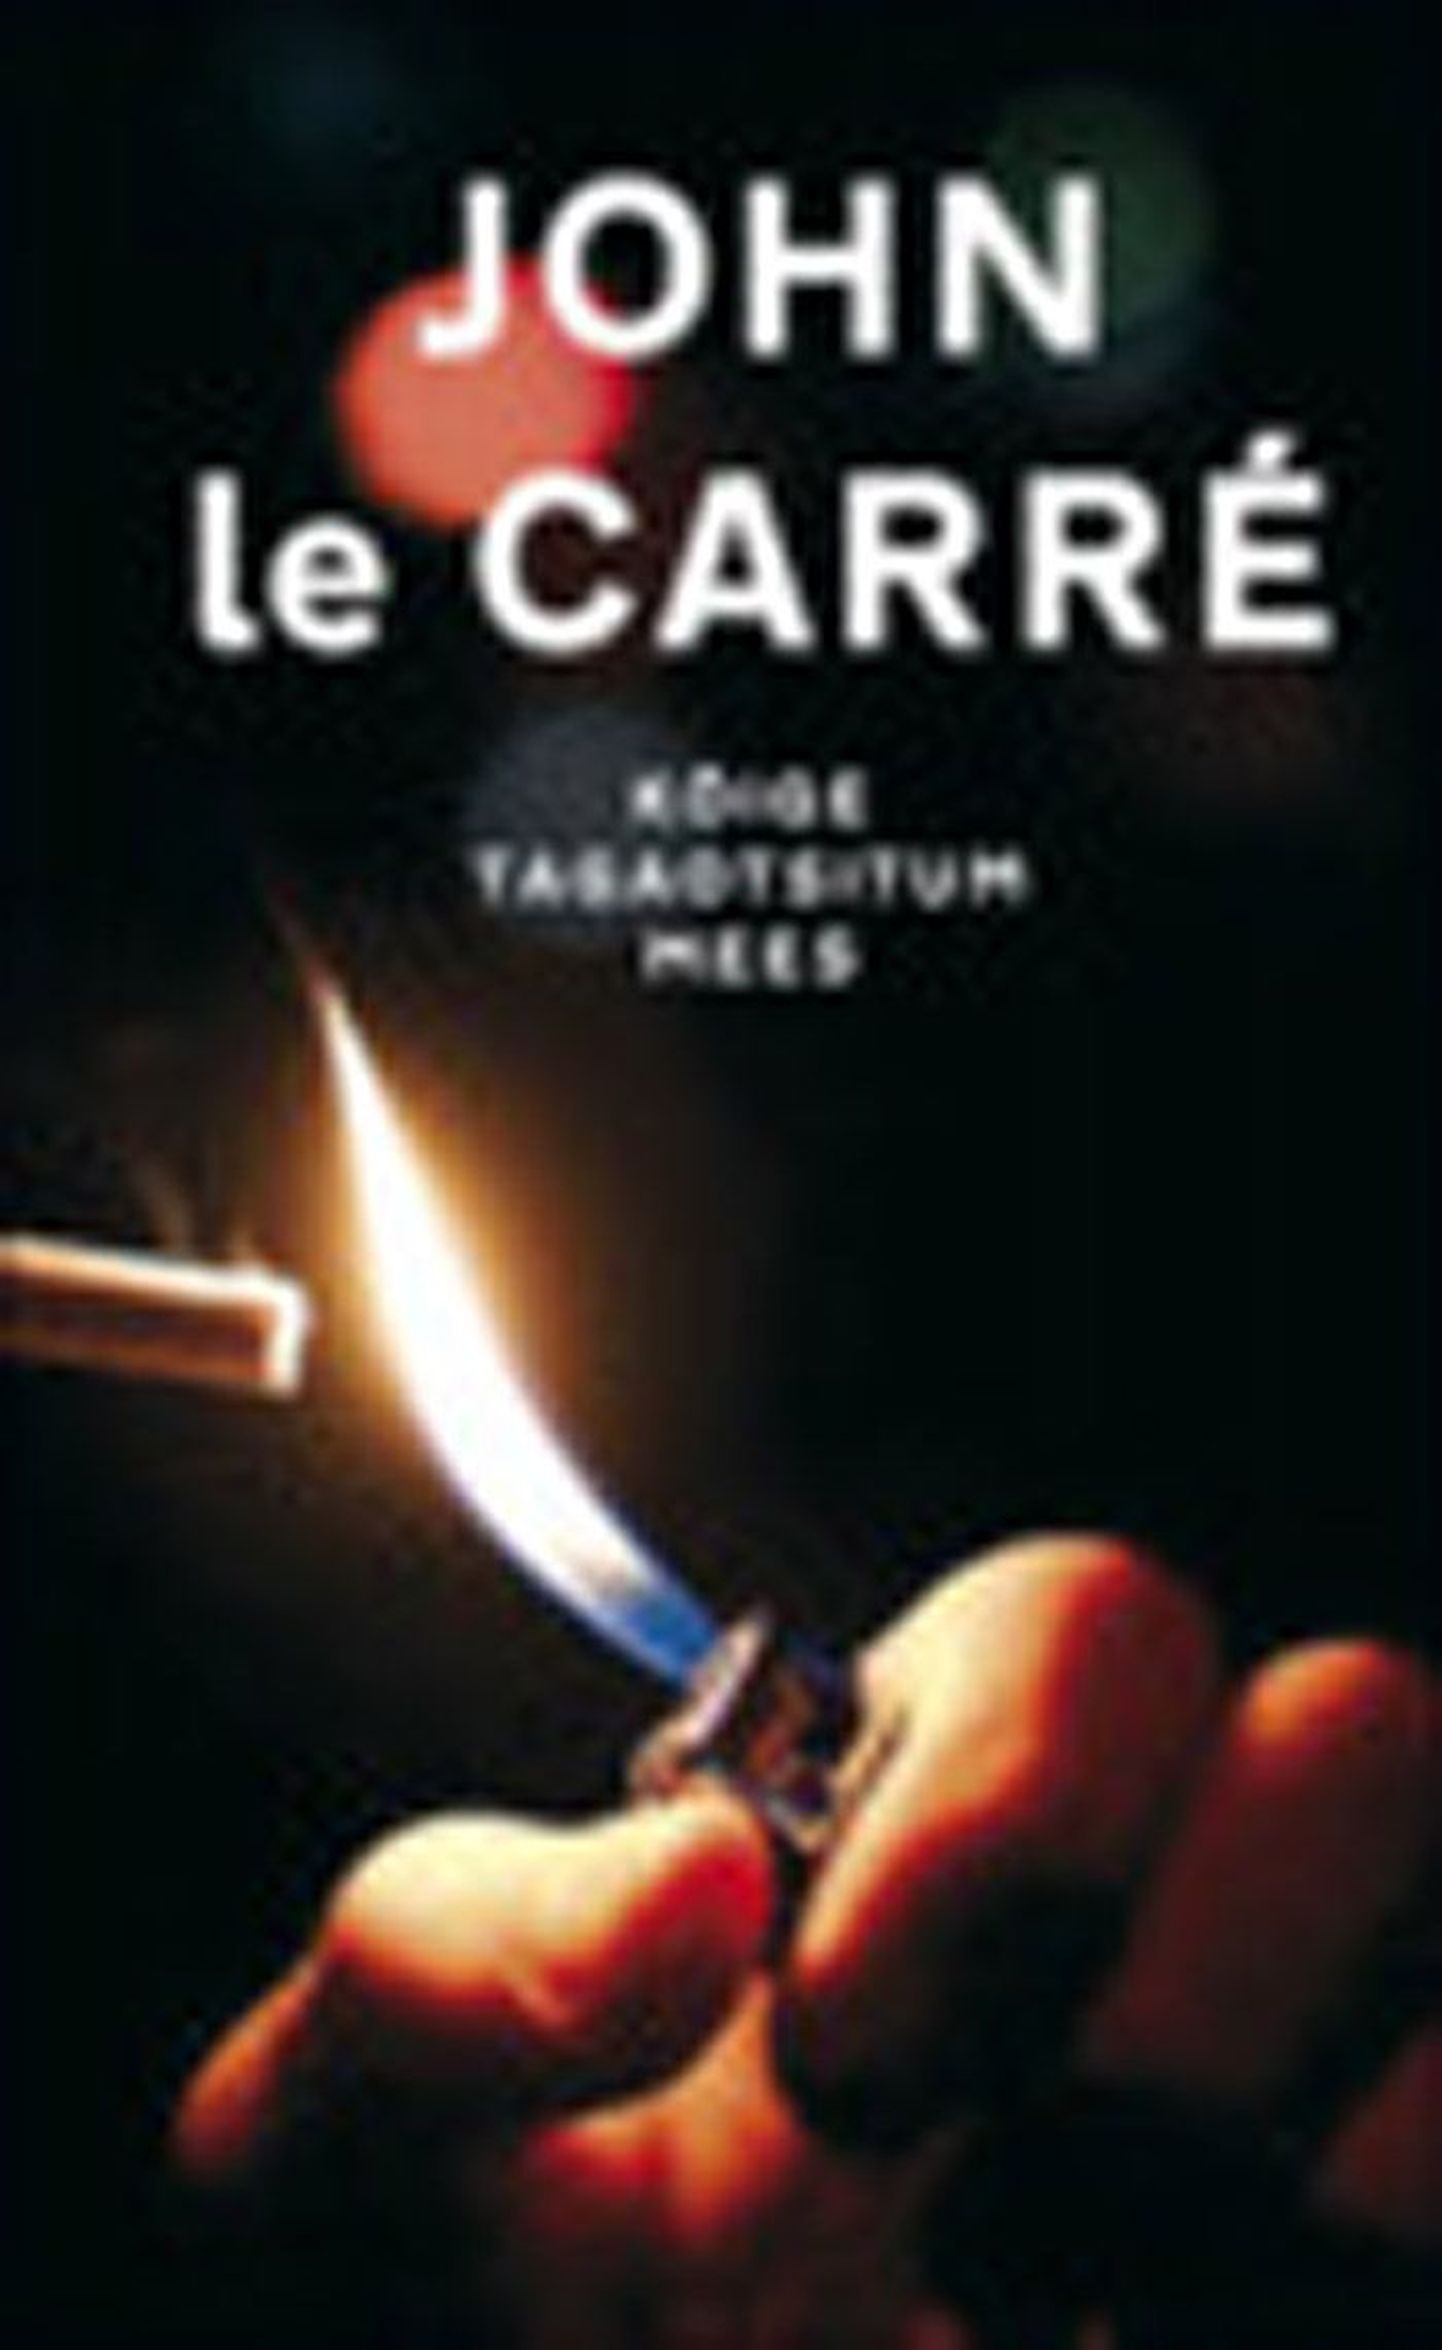 Raamat
John le Carré 
«Kõige tagaotsitum mees»
Tõlkinud Kristjan Jaak Kangur
Varrak, 358 lk